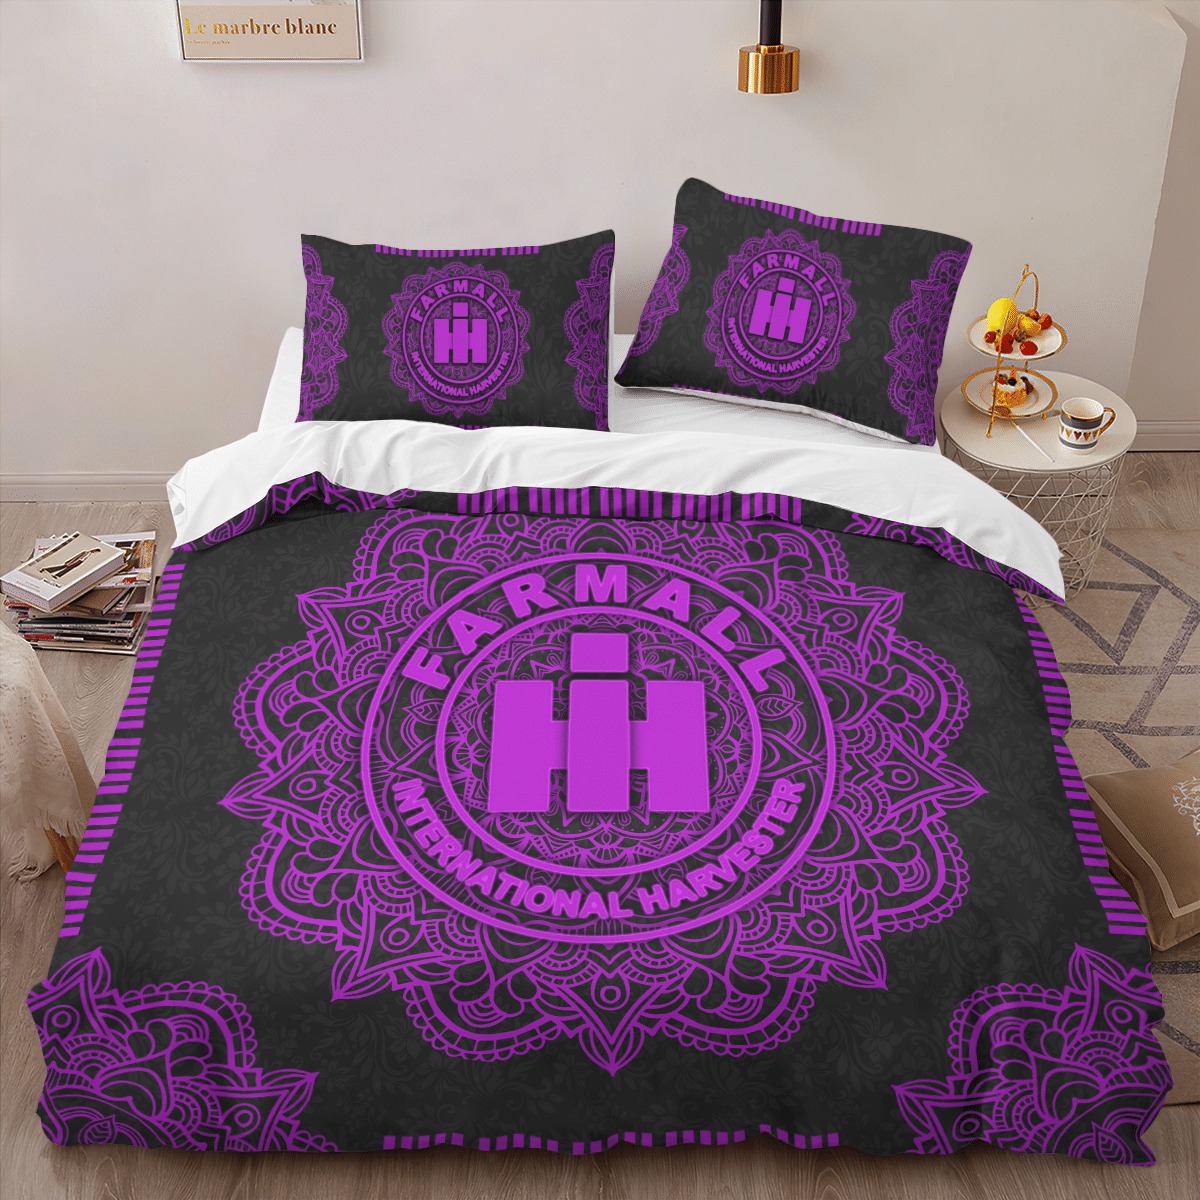 Farmall International Harvester IH Mandala quilt bedding set 8